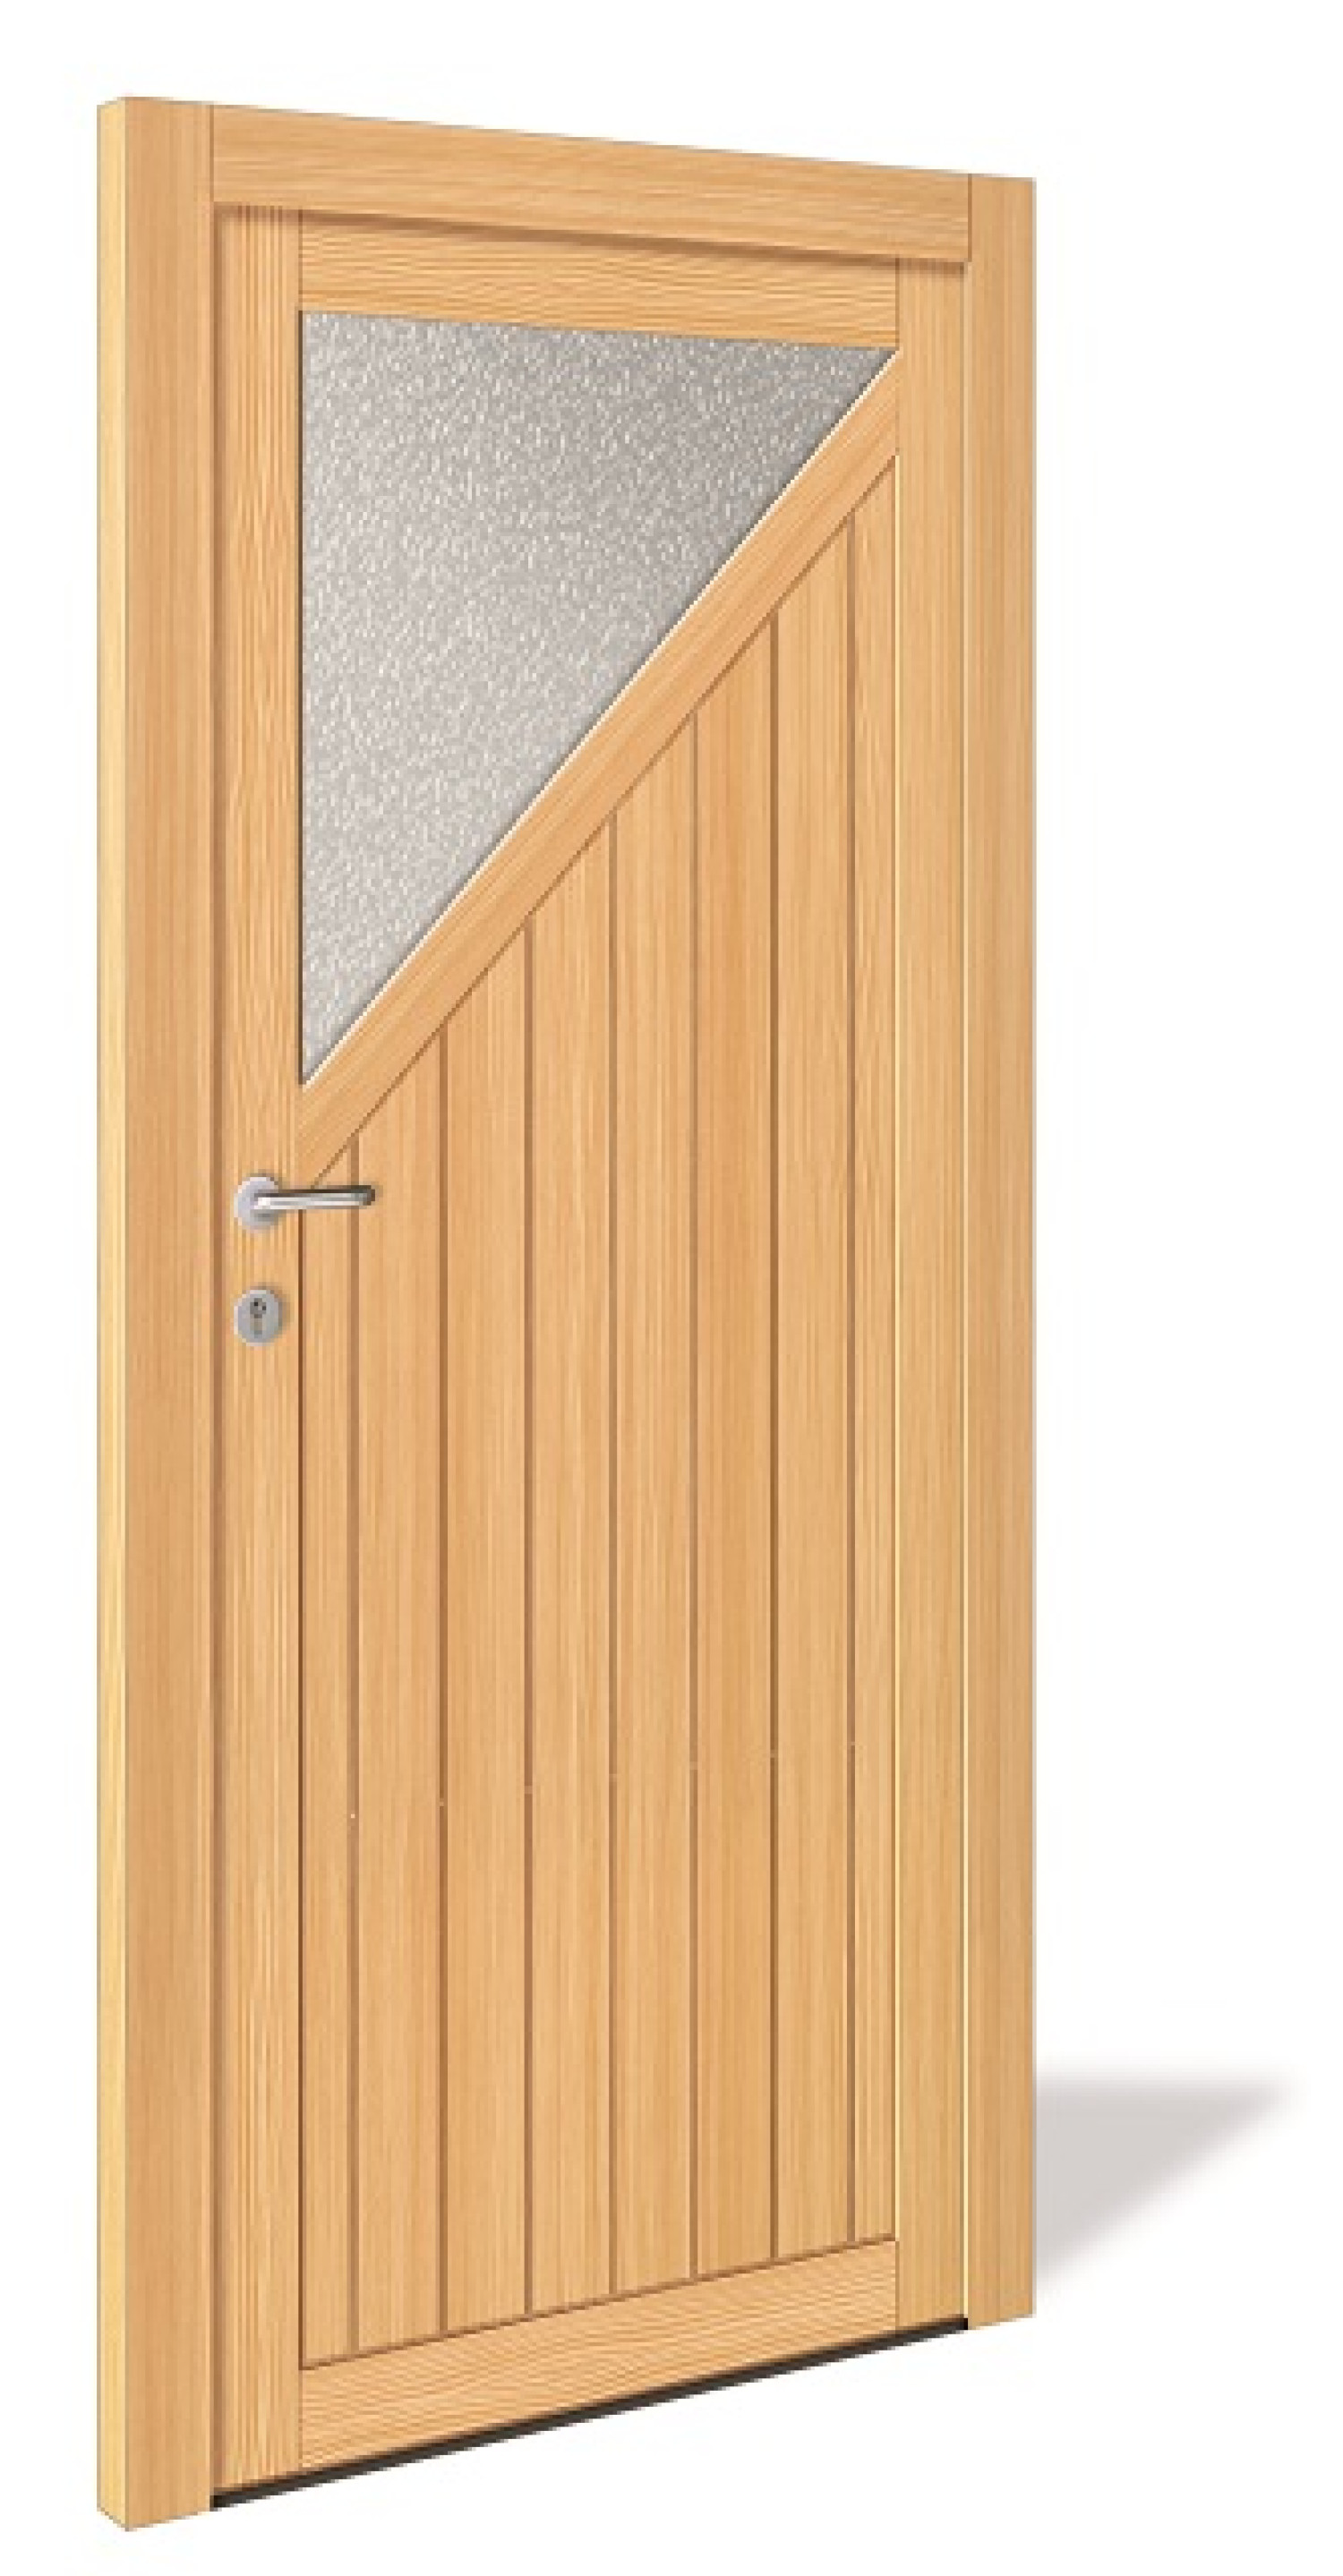 NET 1071 Holz Nebeneingangstür mit Glasausschnitt - Interio